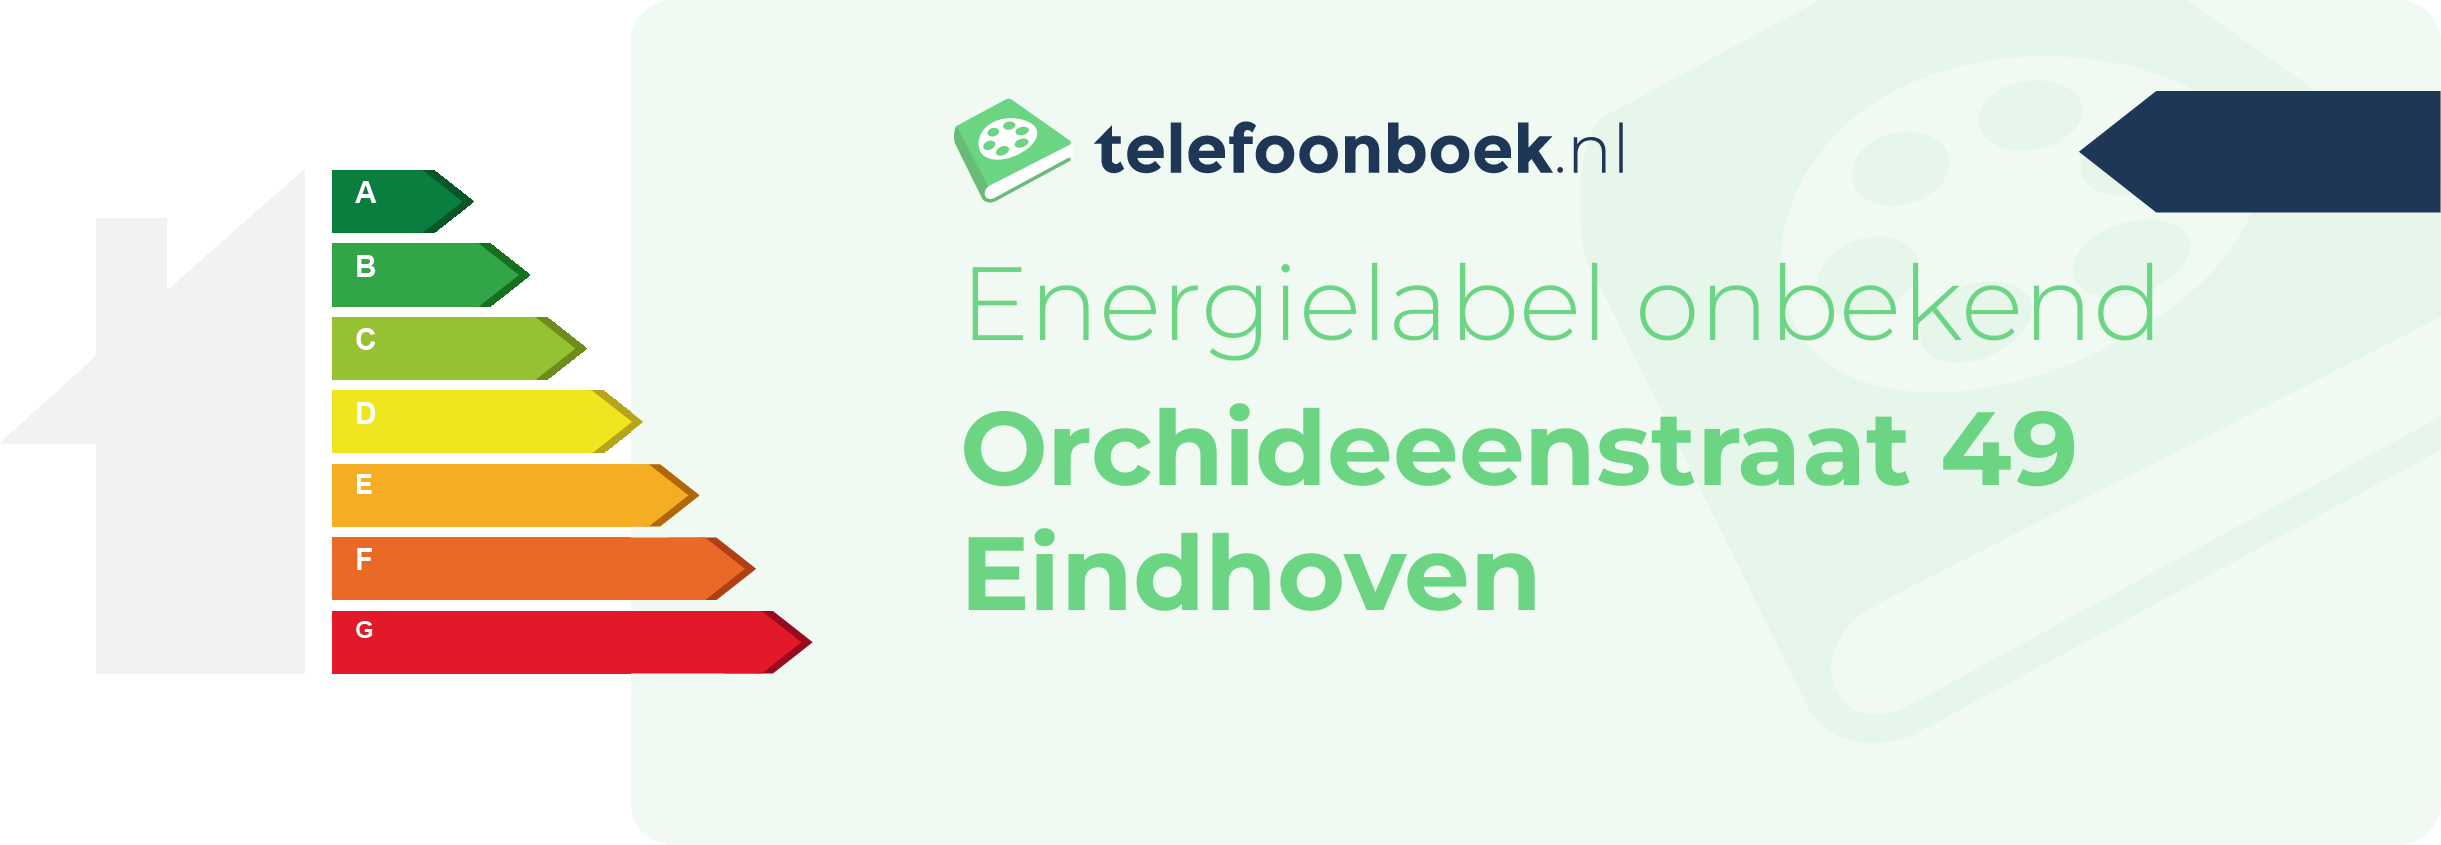 Energielabel Orchideeenstraat 49 Eindhoven